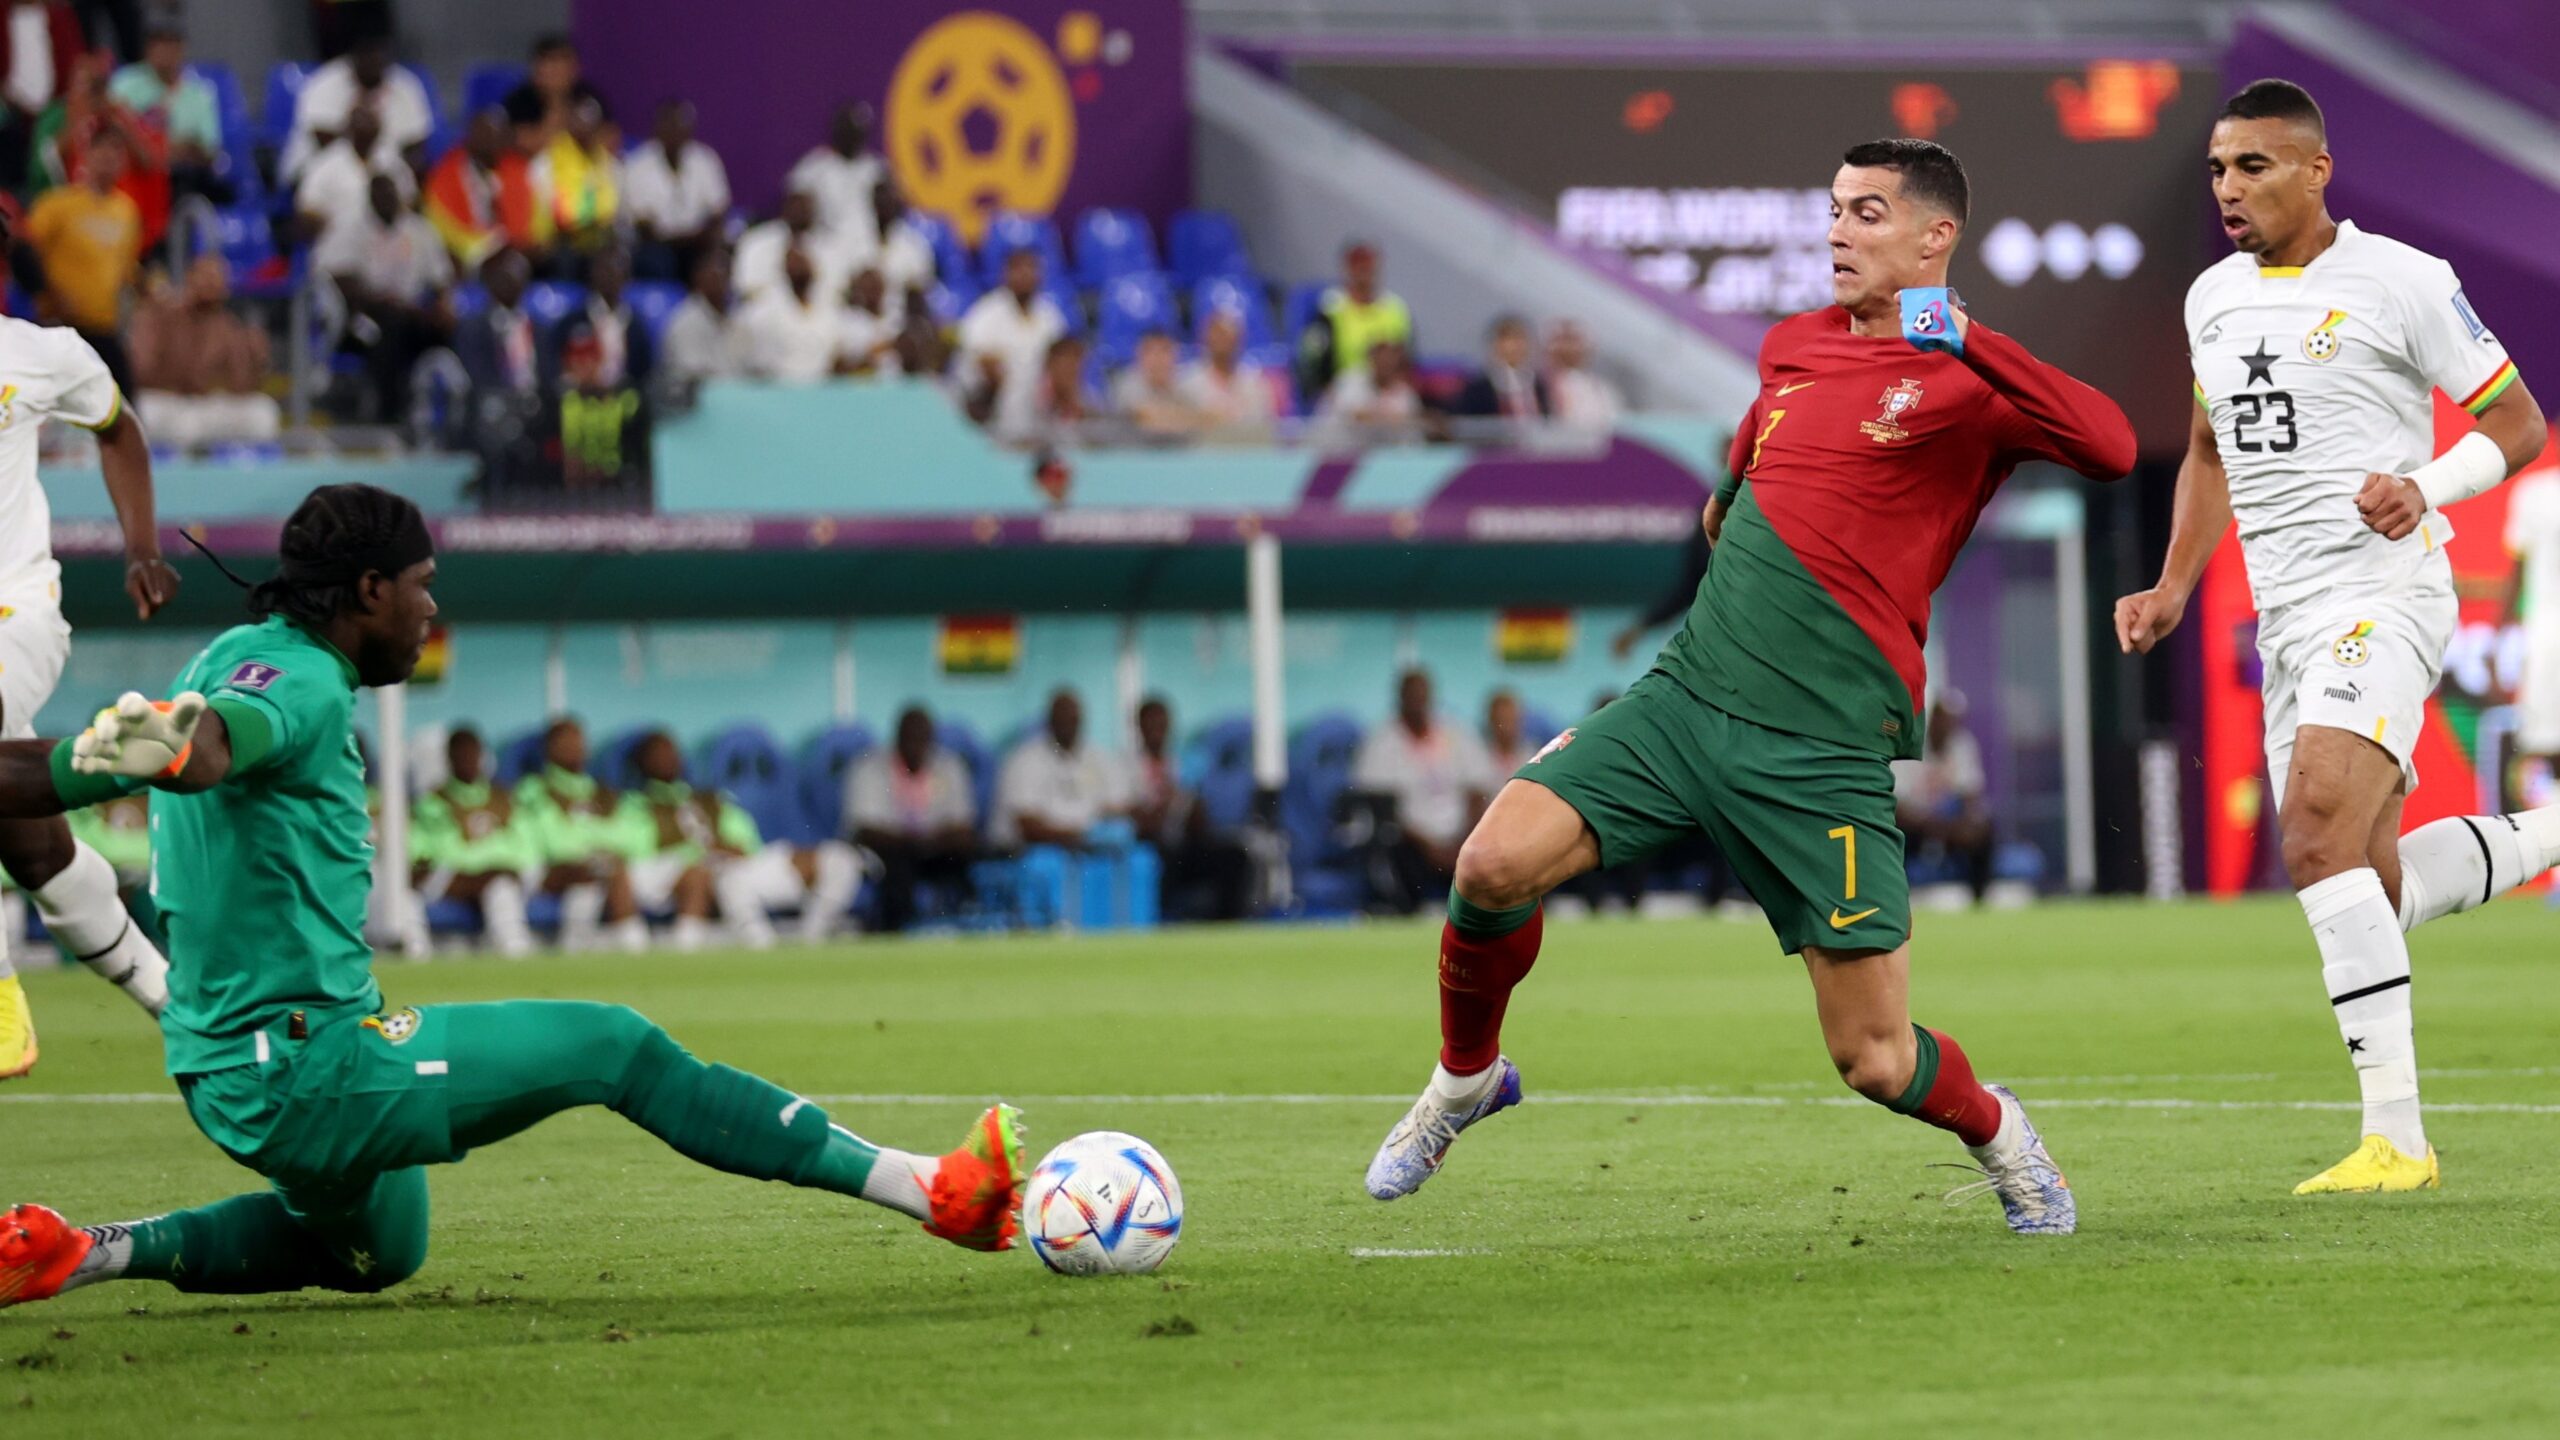 Gana diminui, mas Portugal vence no jogo de estreia da Copa por 3 x 2